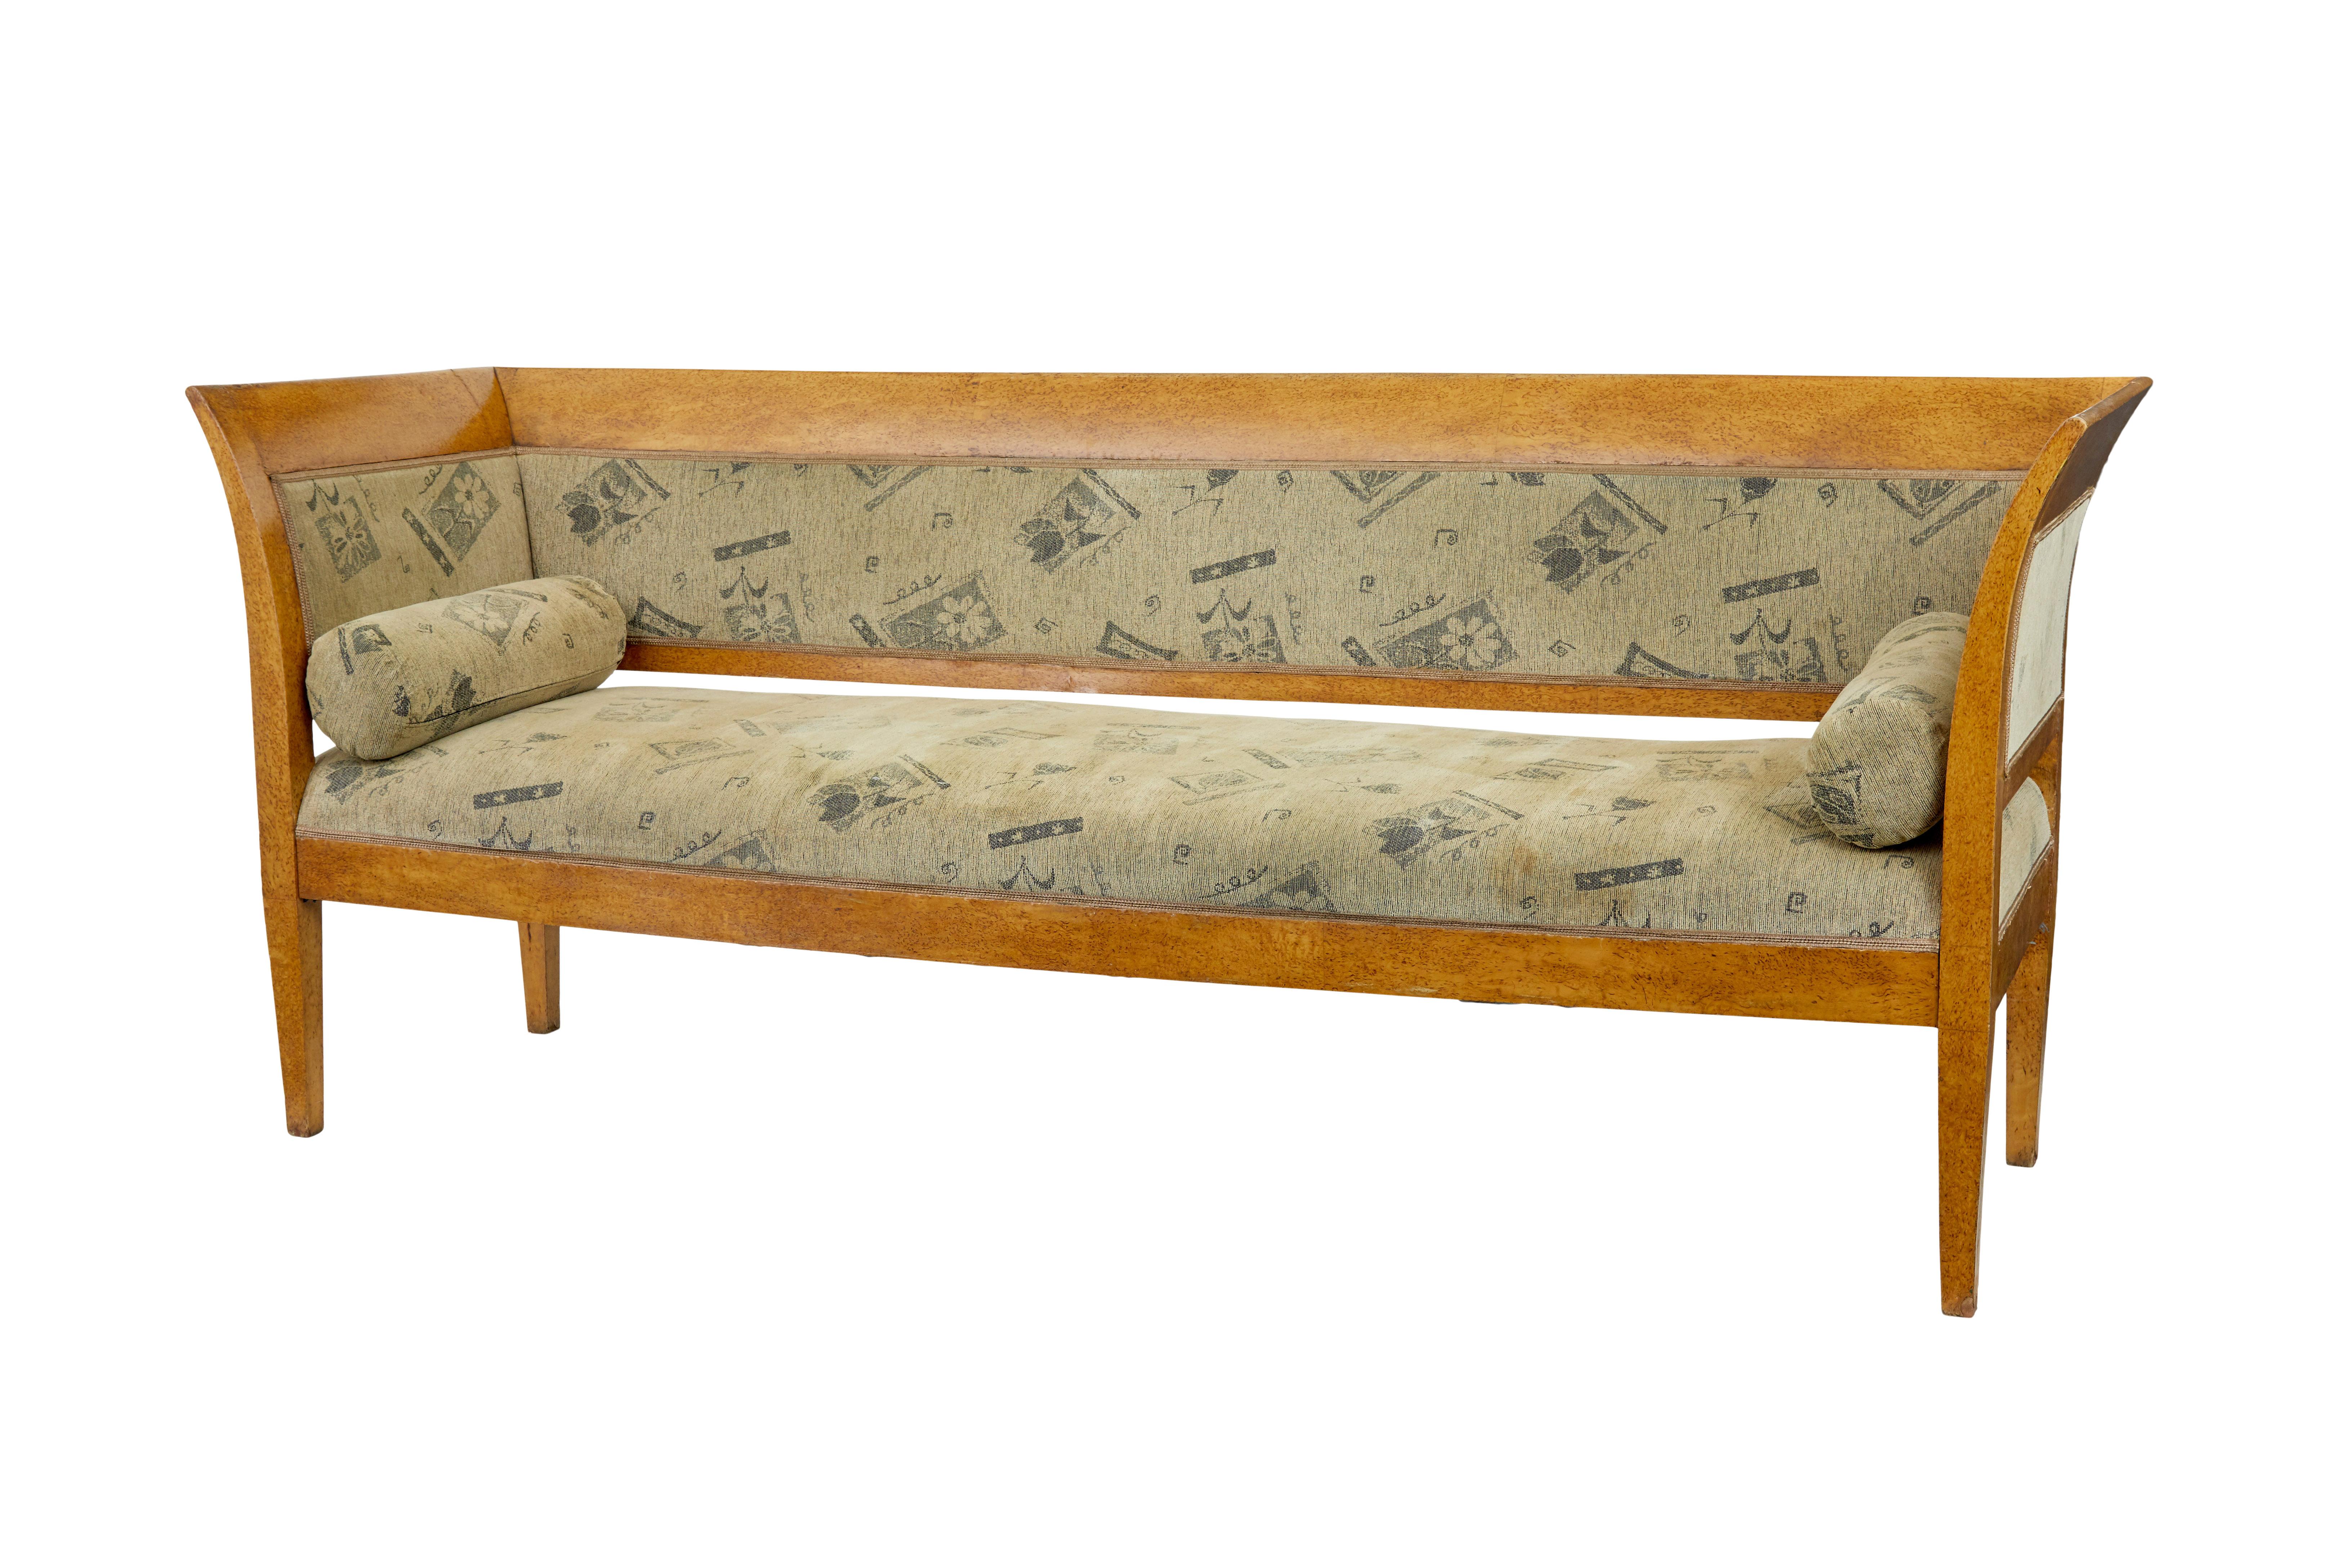 Suite de salon en loupe de bouleau de la fin du 19e siècle, vers 1890.

L'ensemble comprend 1 canapé et 6 chaises de salle à manger simples.  Placage en loupe de bouleau de couleur dorée. Tapissé d'un tissu plus tardif.

L'ensemble repose sur des